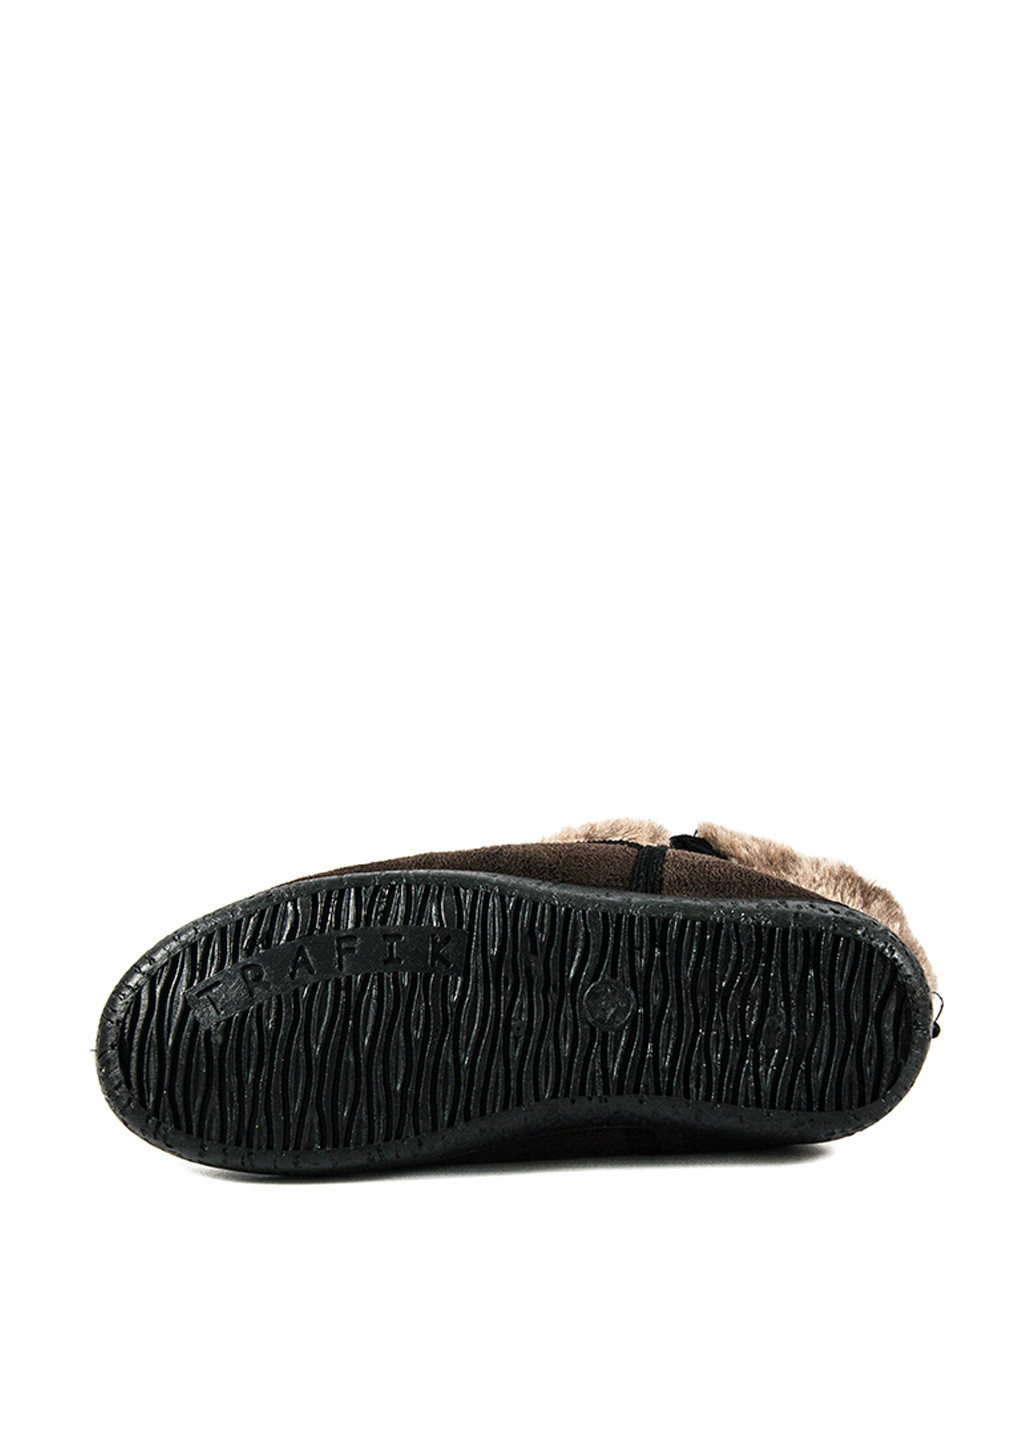 Зимние бурки Foot wear с мехом из искусственной замши